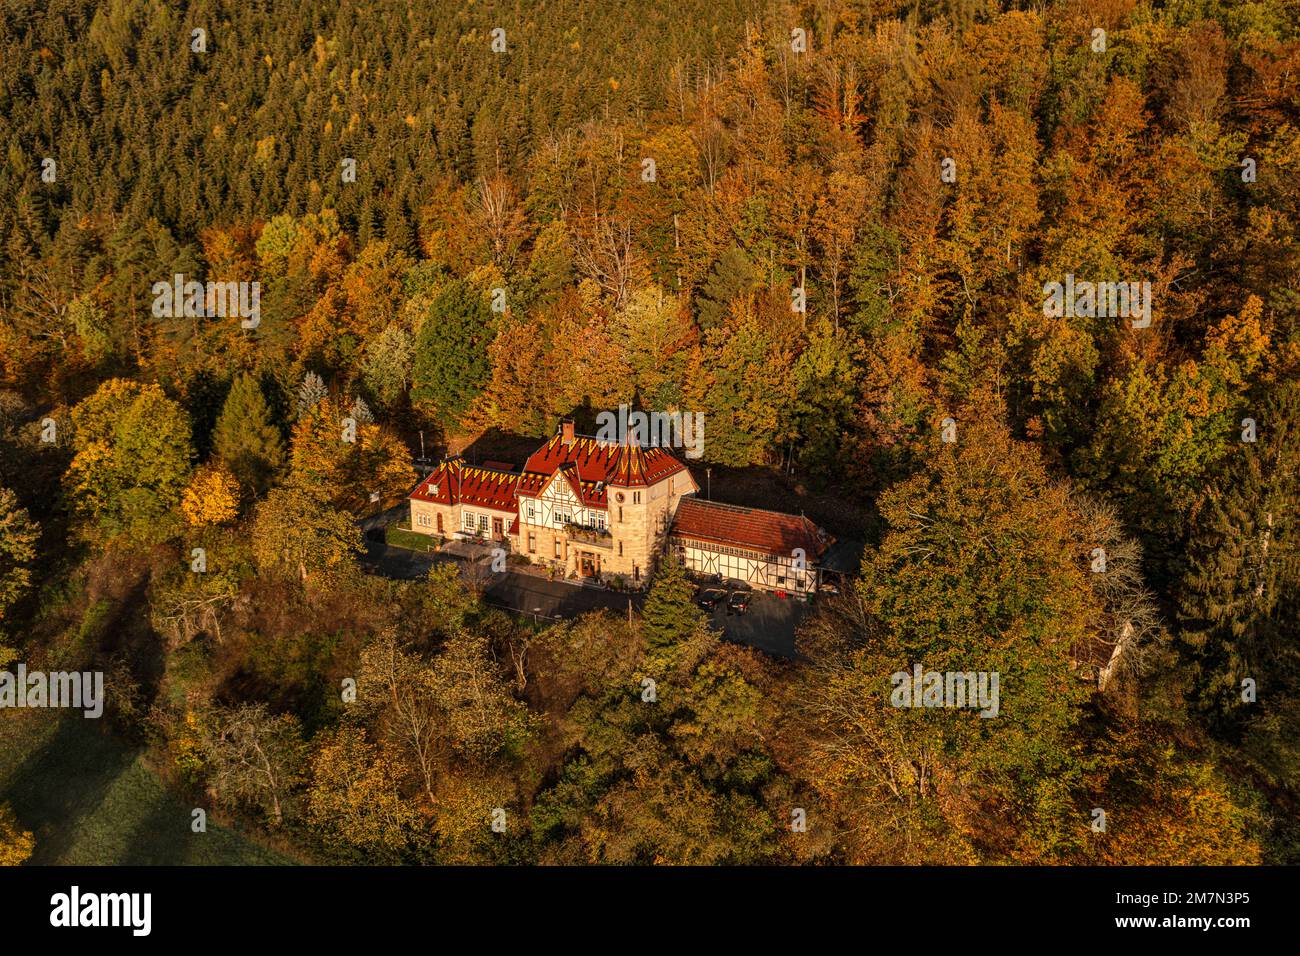 Germania, Turingia, Schwarzburg, casa pittoresca, ex stazione reception edificio, foresta, vista aerea Foto Stock